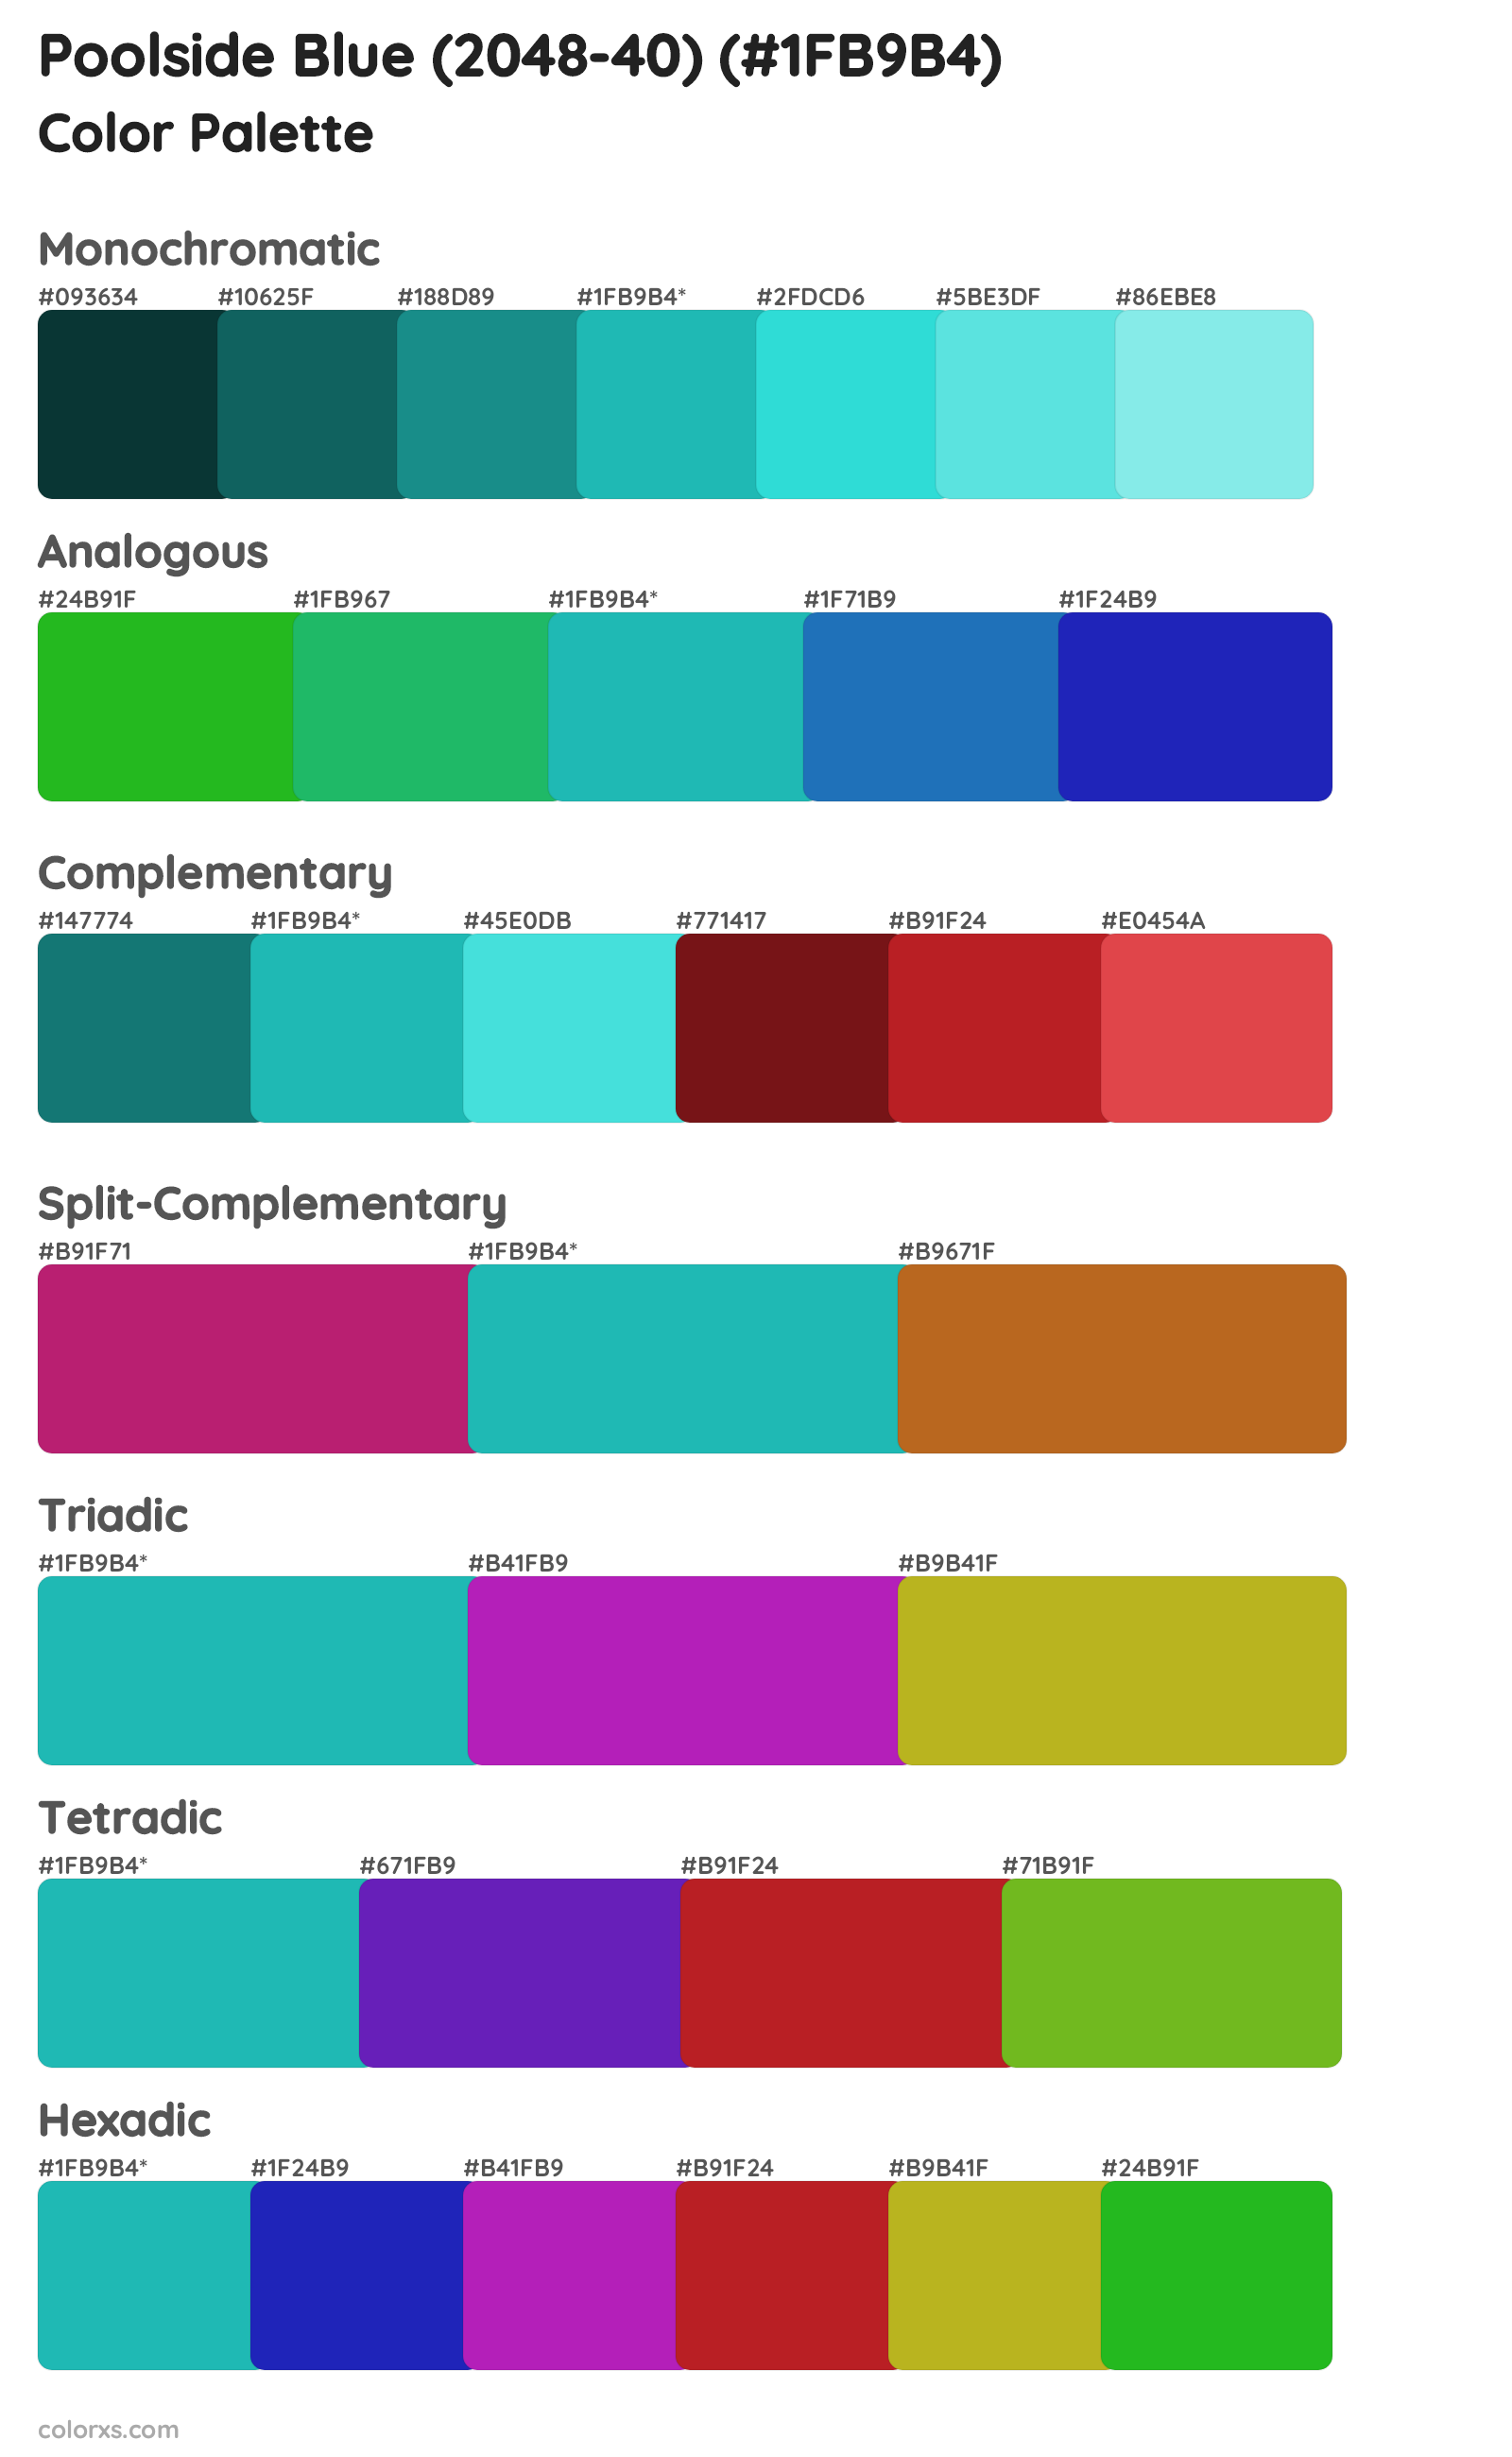 Poolside Blue (2048-40) Color Scheme Palettes